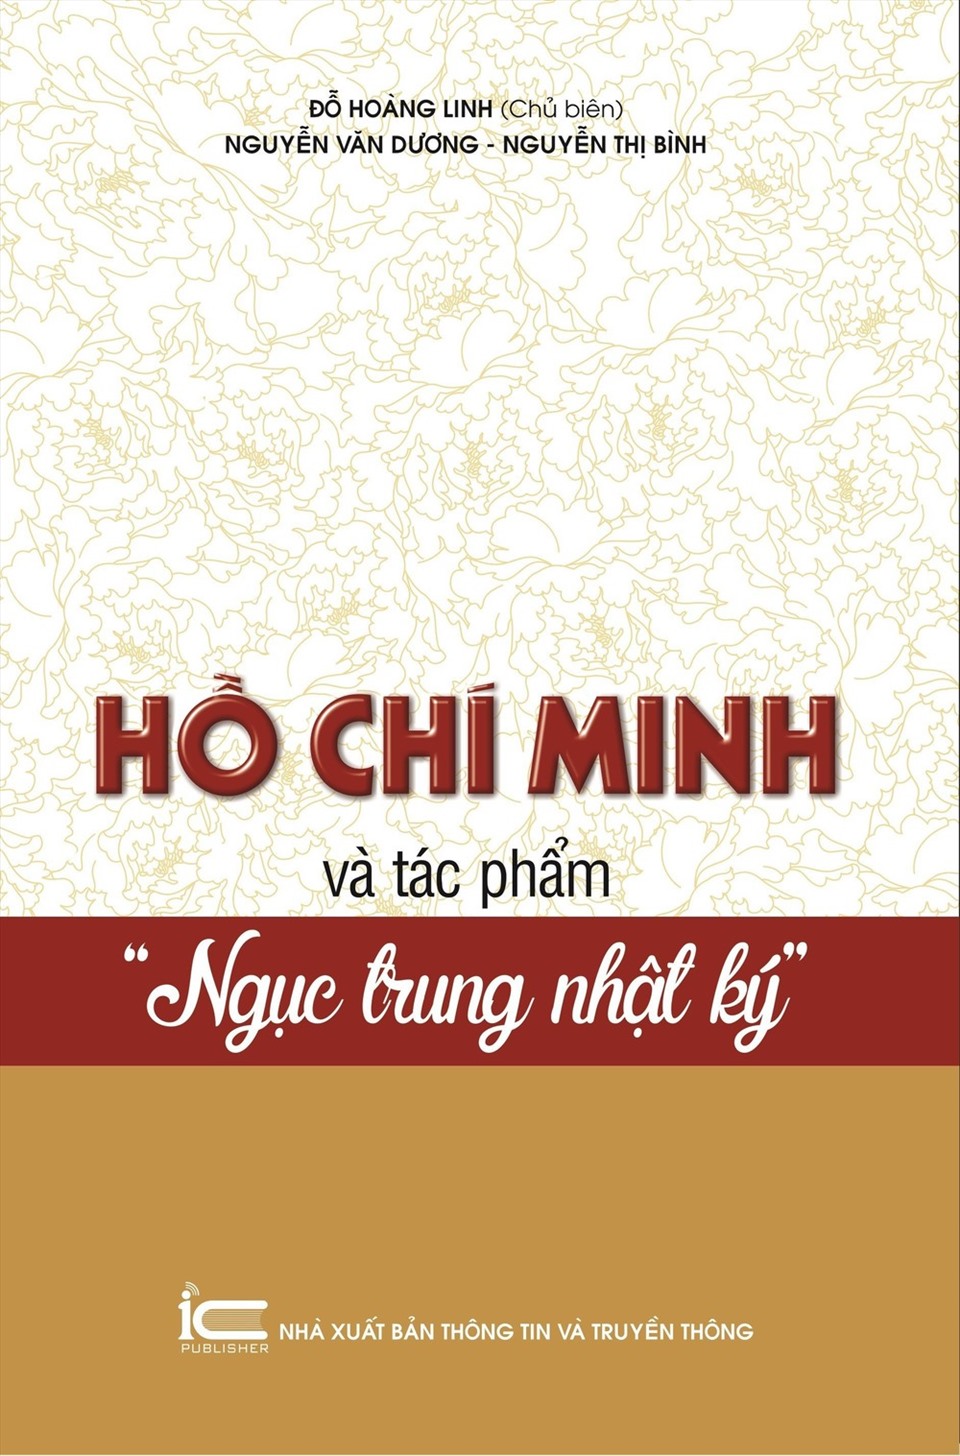 Cuốn sách “Hồ Chí Minh và Ngục trung